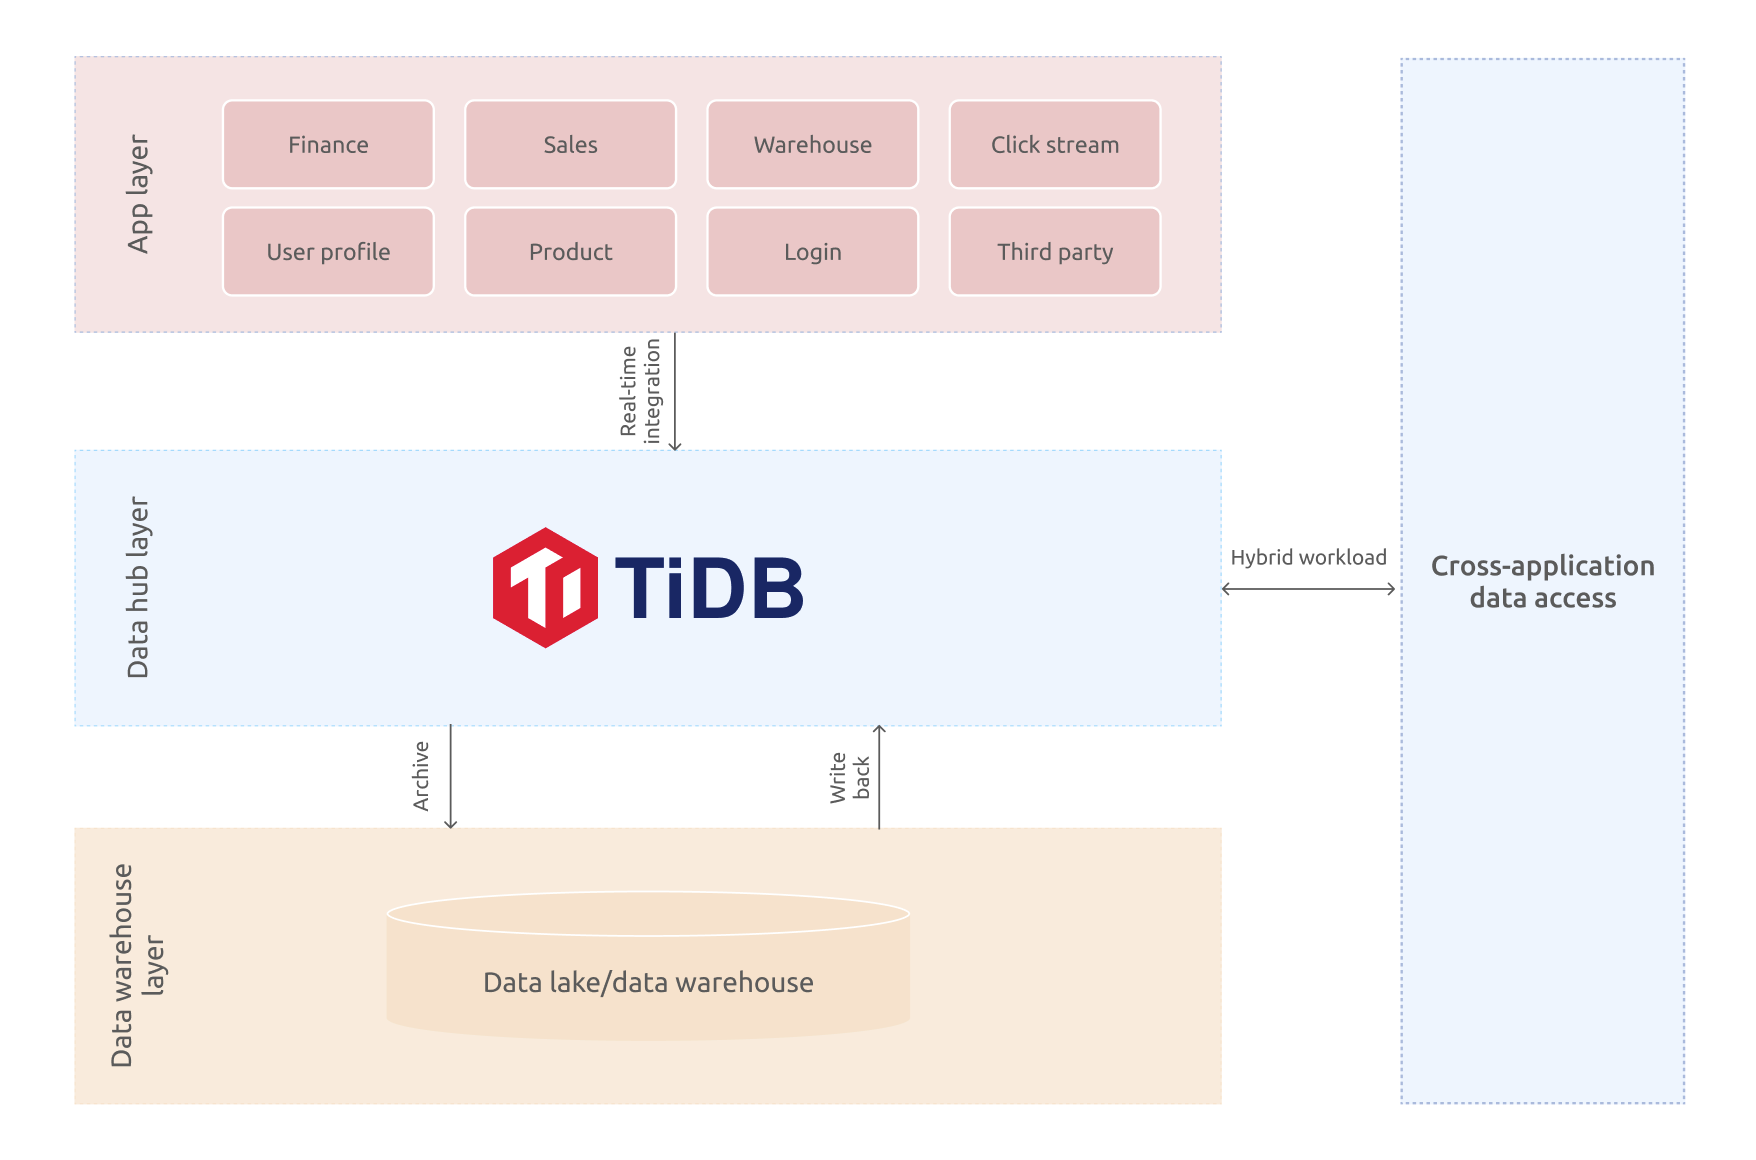 TiDB in the data hub scenario